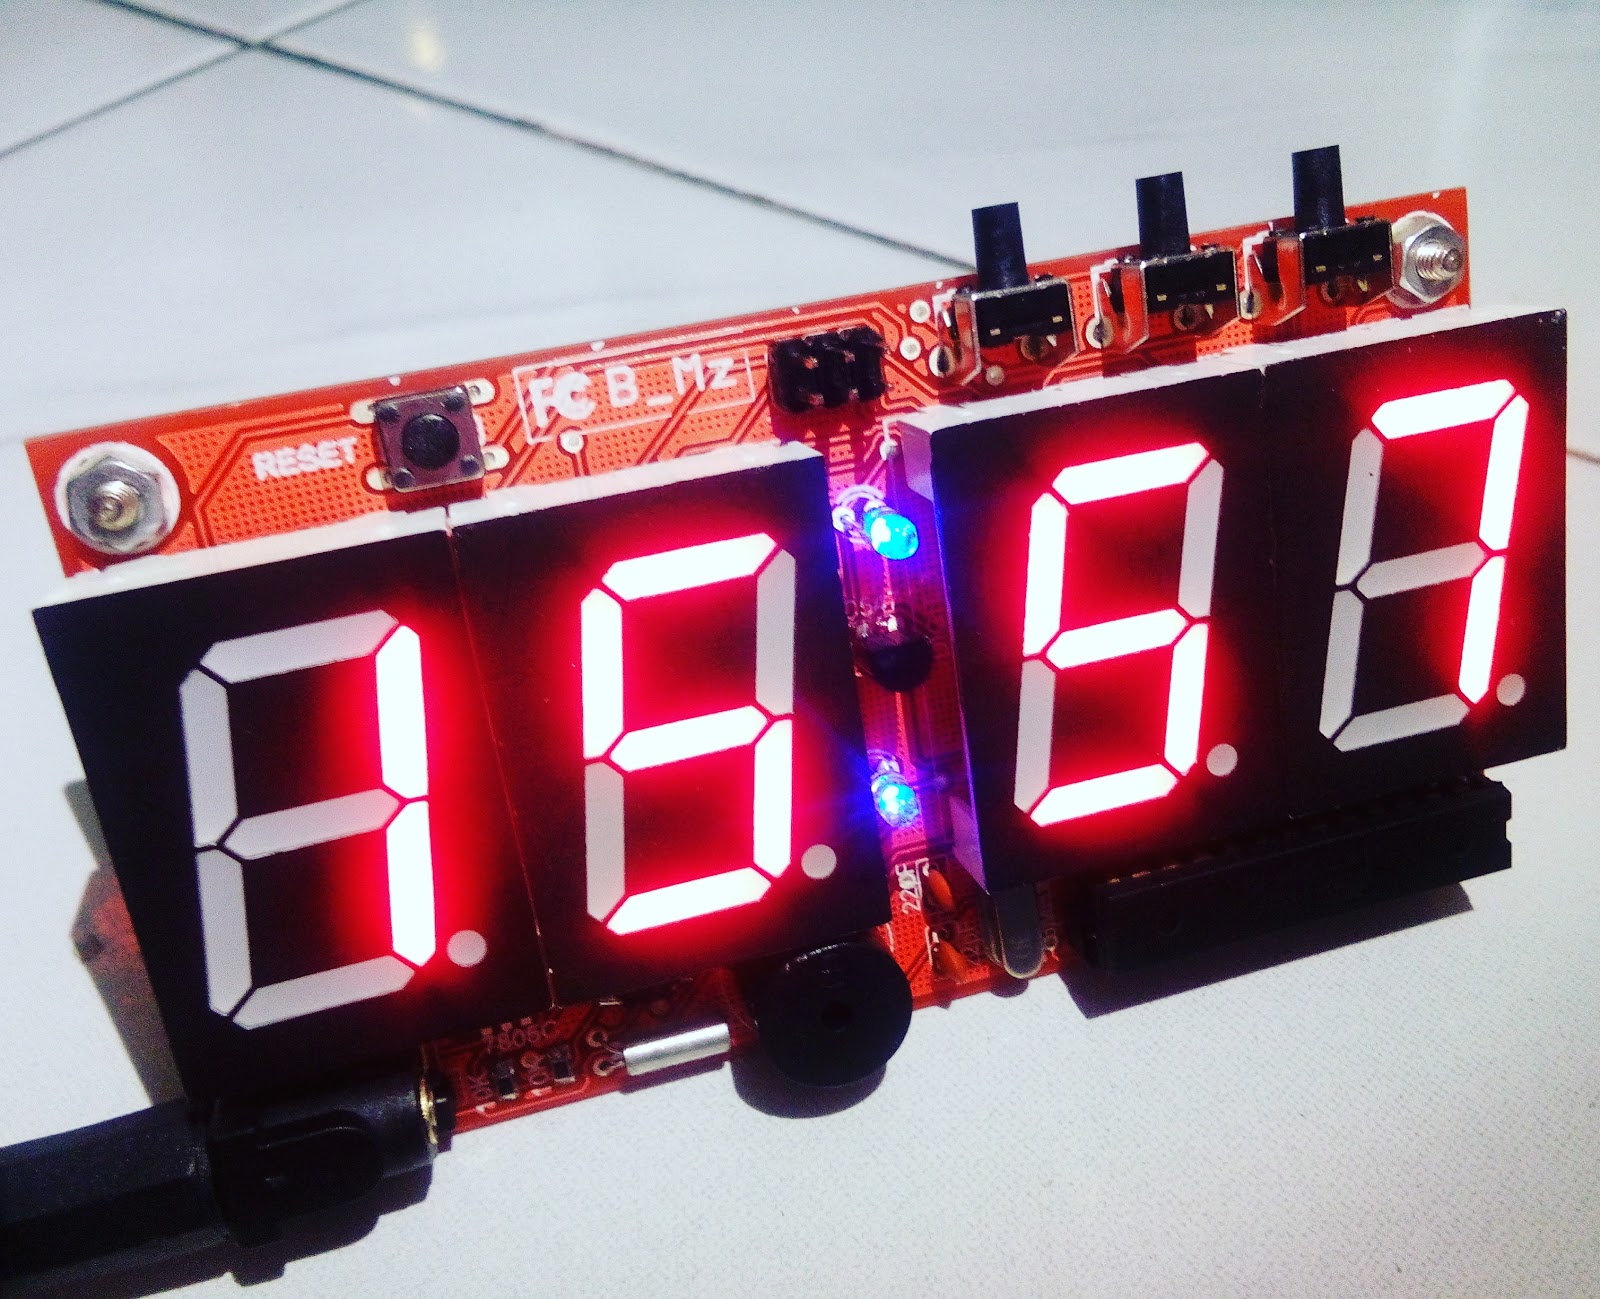 Dick b. Цифровой дисплей ардуино. Часы семисегментный дисплей. Старые цифровые часы и Arduino. 7 Segment Arduino.